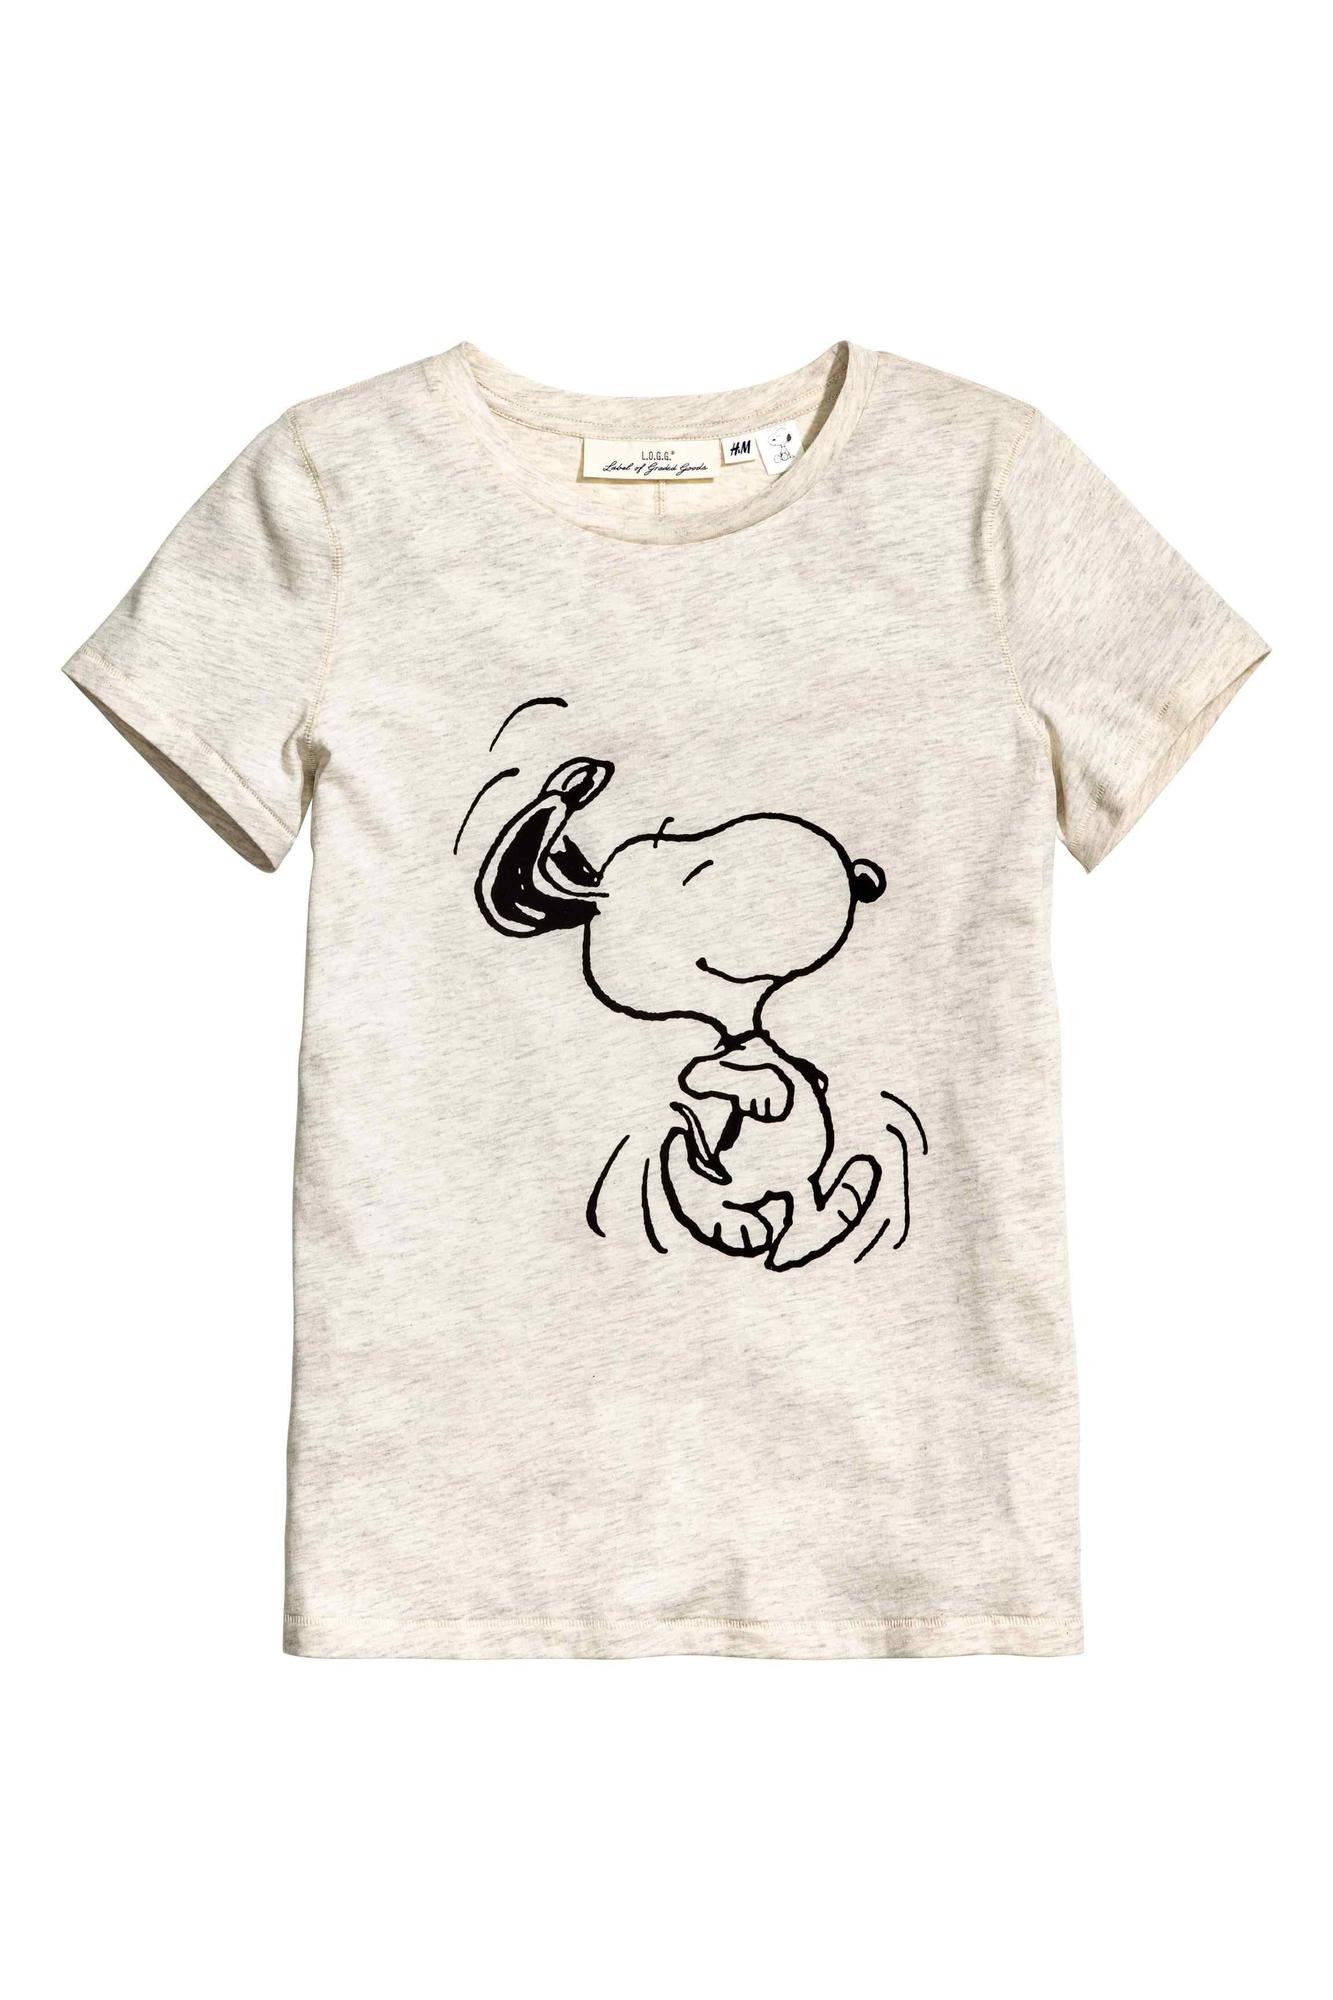 Camisetas animadas: Snoopy